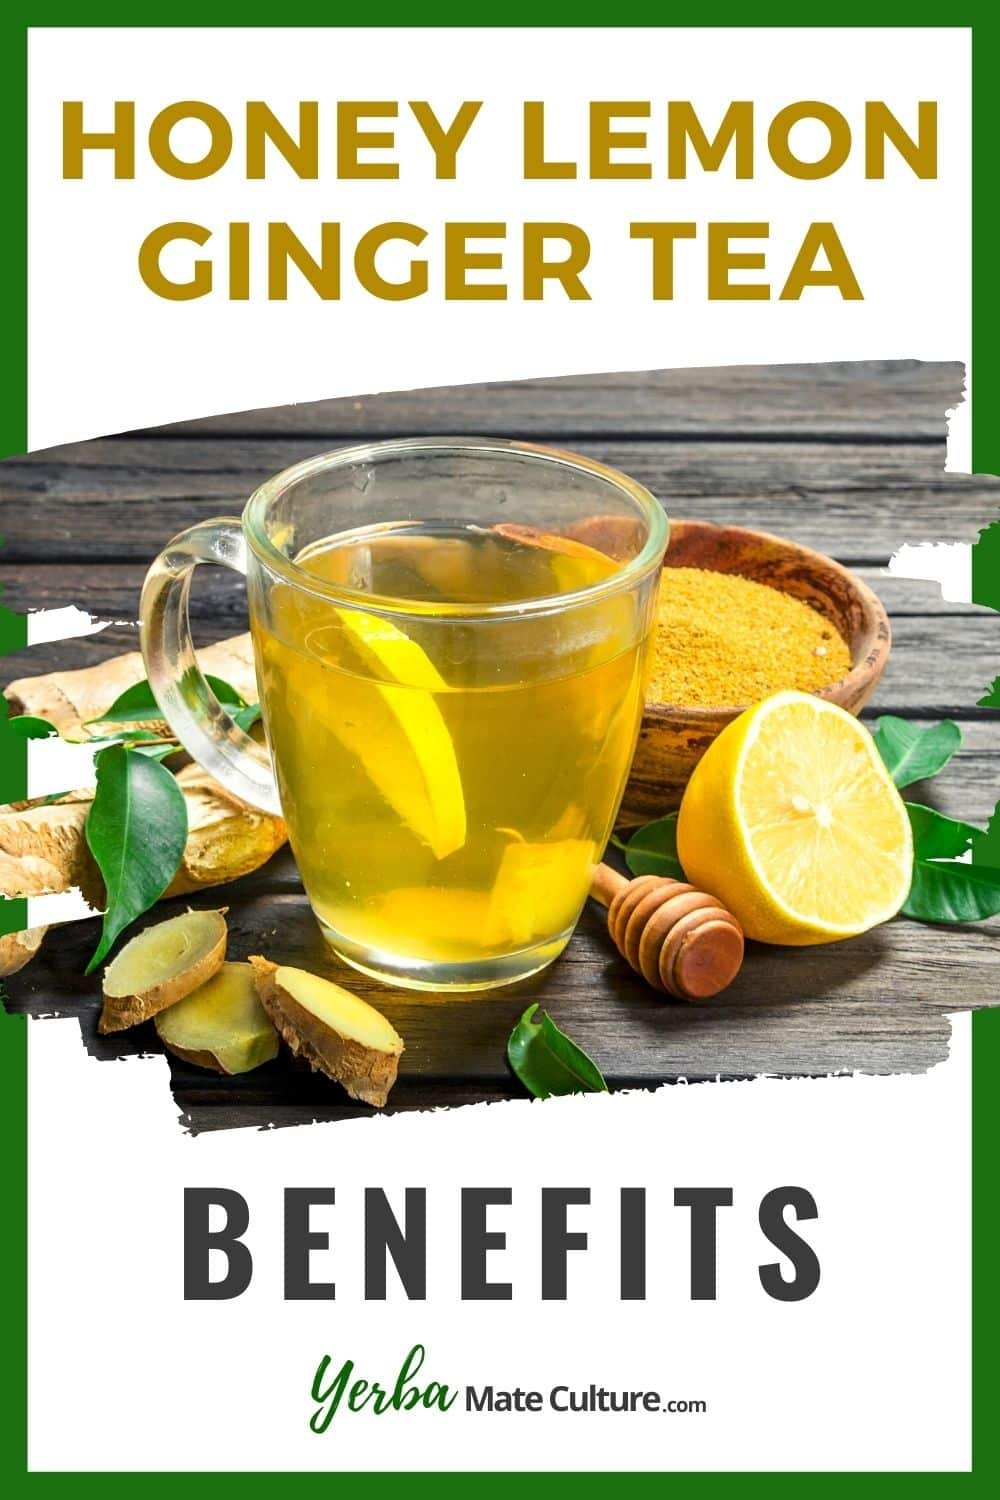 Honey Lemon ginger tea